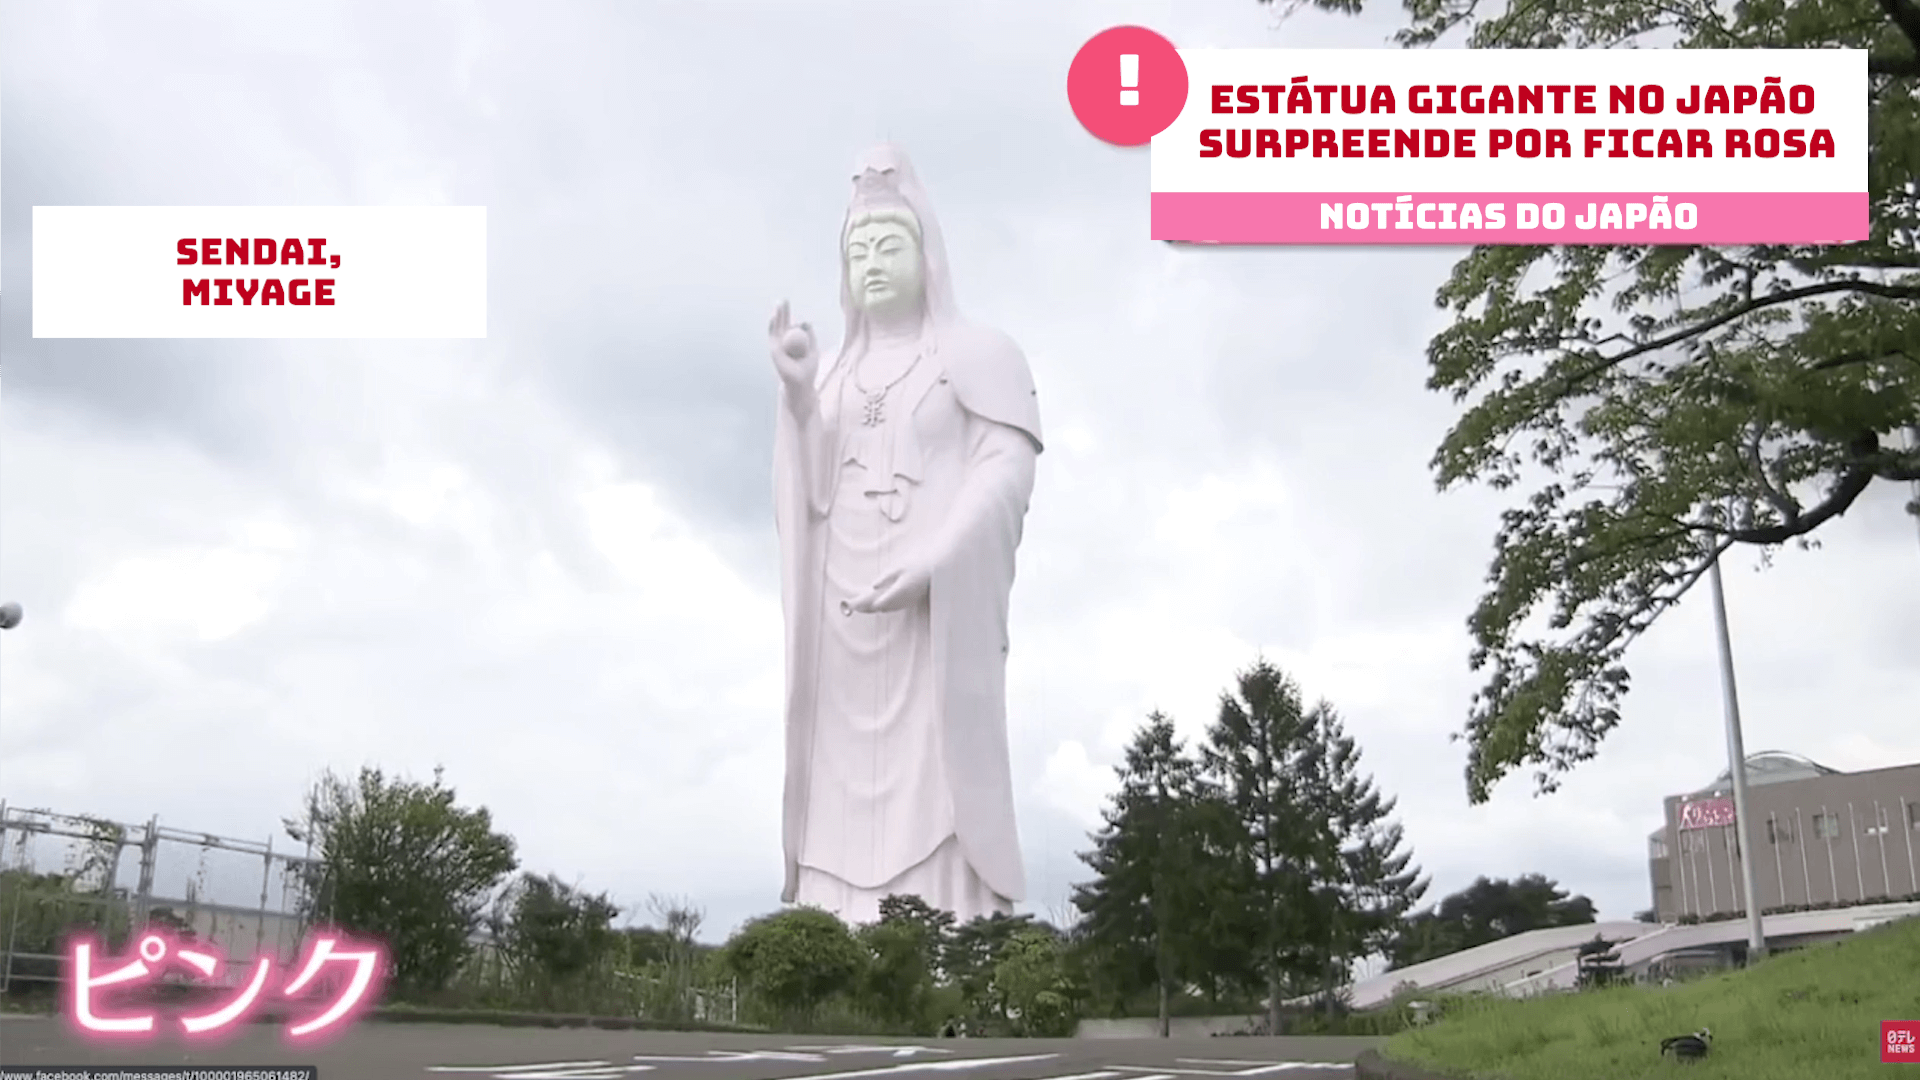 Estátua gigante no Japão surpreende por ficar rosa 